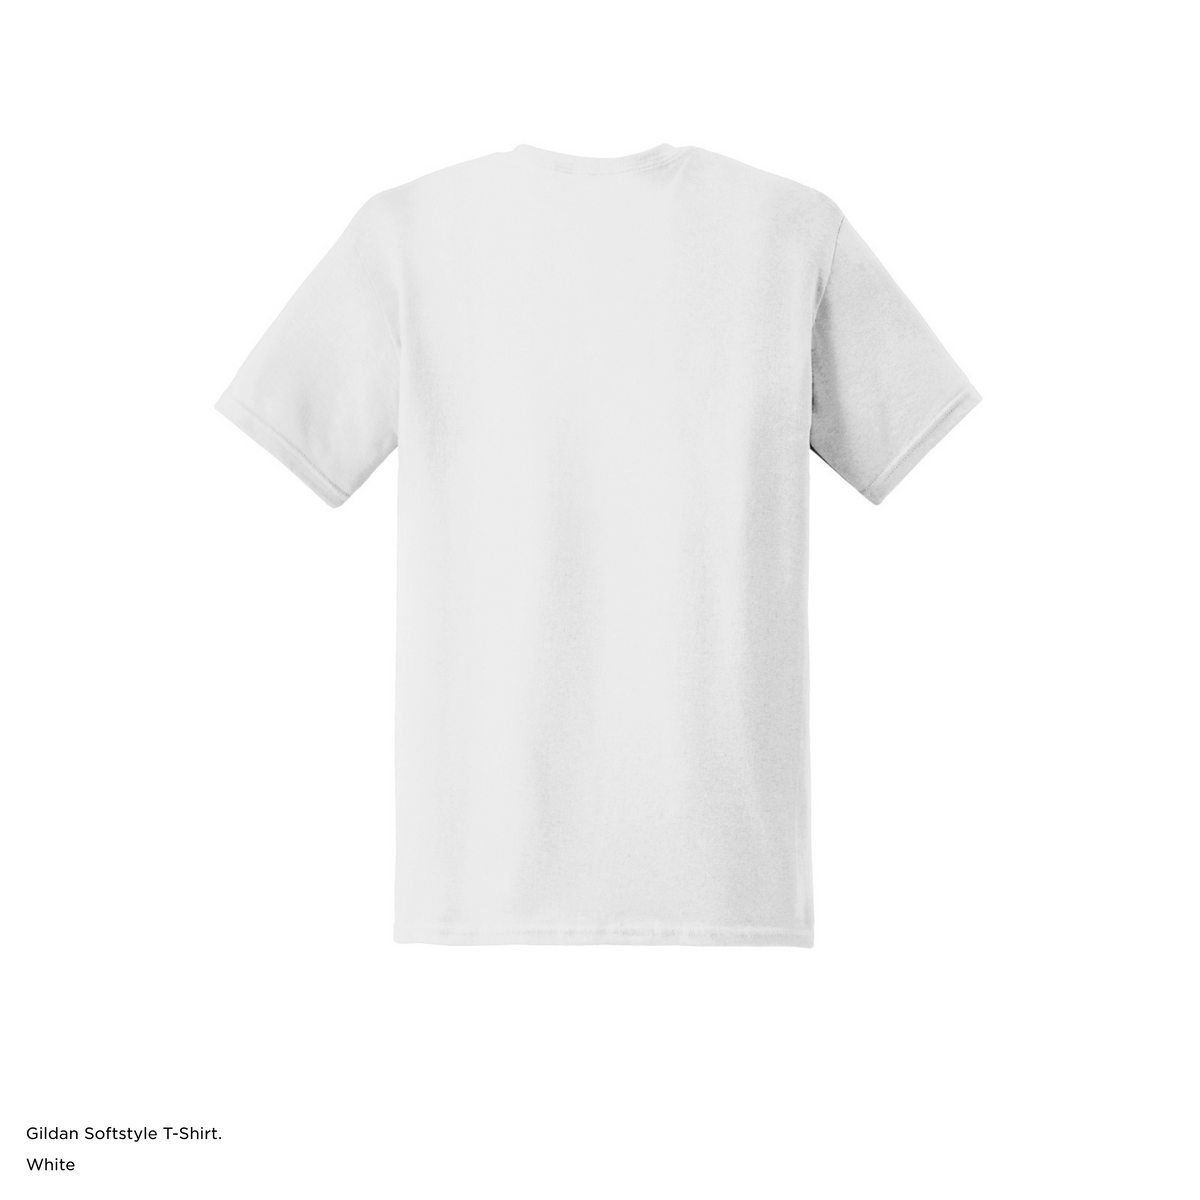 Personalized Gildan Soft Style T-Shirt